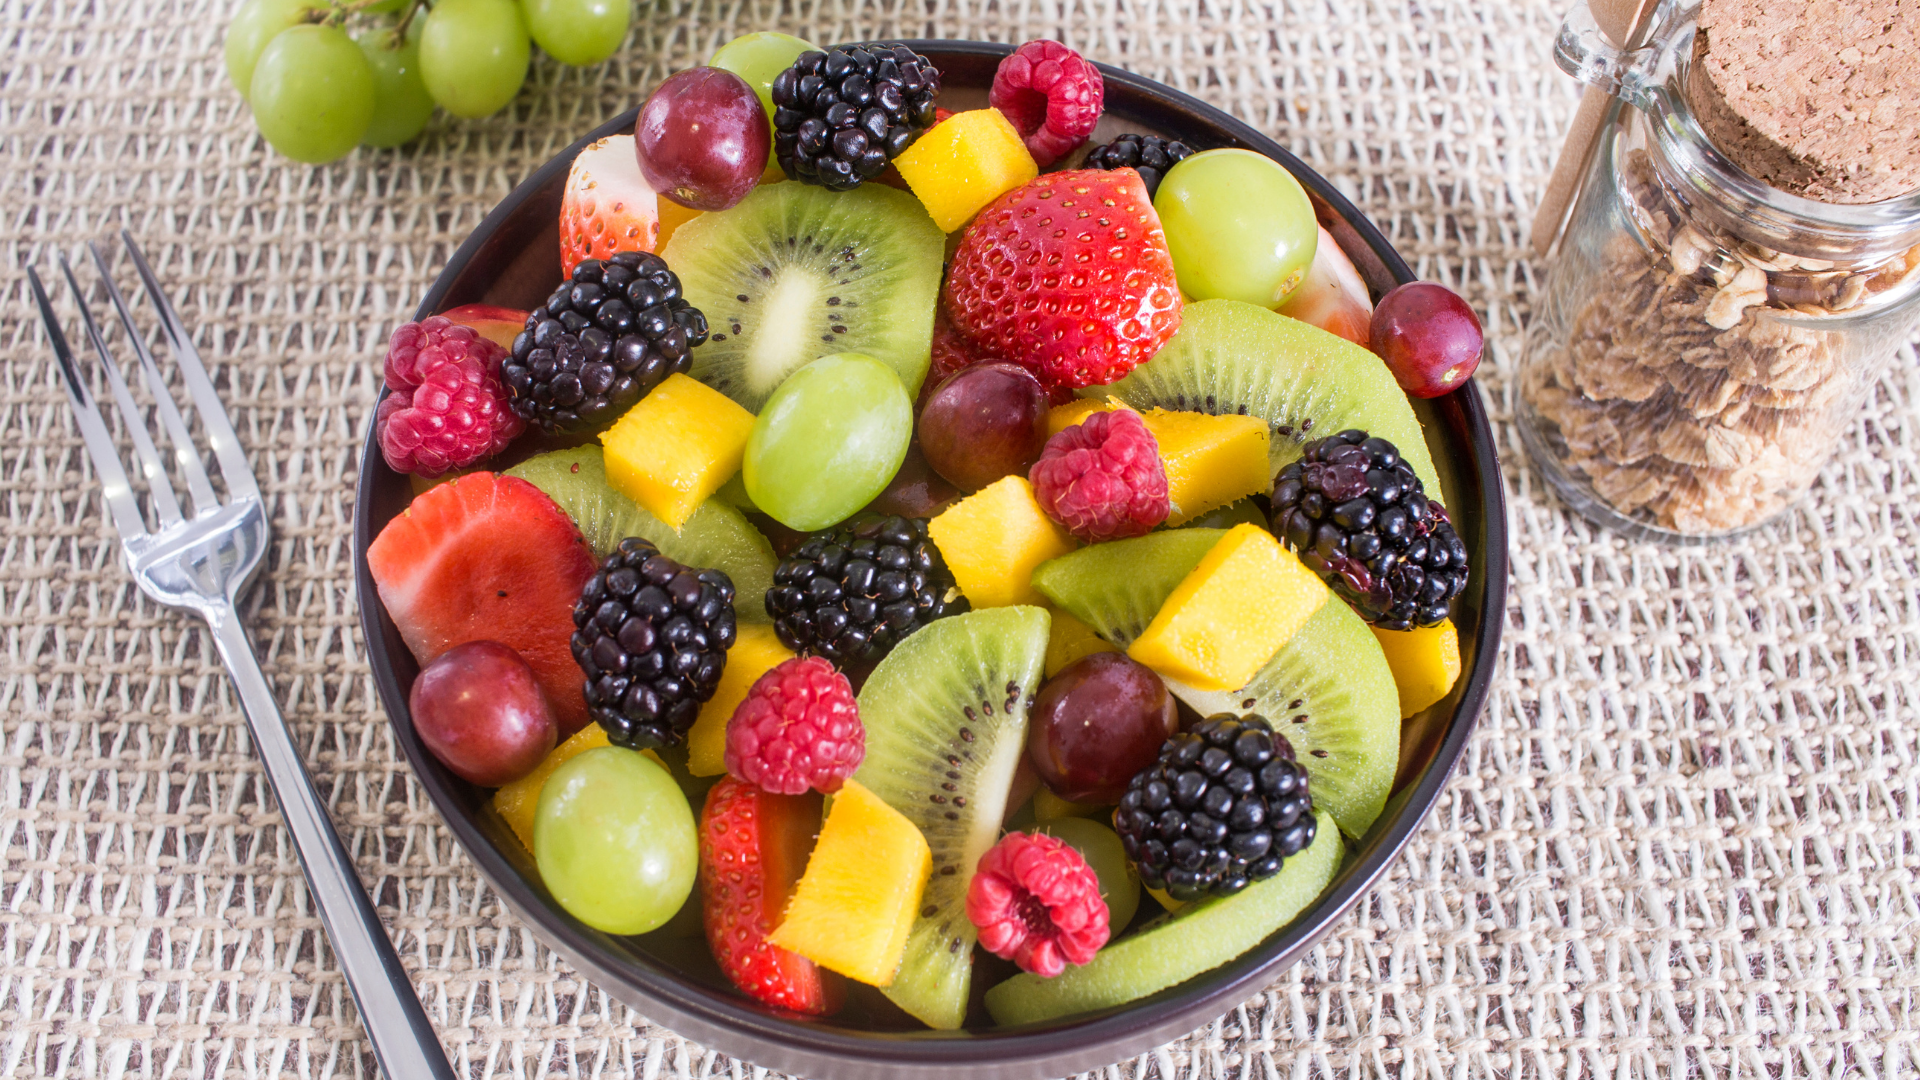 Foto de capa do artigo "Salada de frutas engorda? Faz mal? Dicas e 7 receitas"